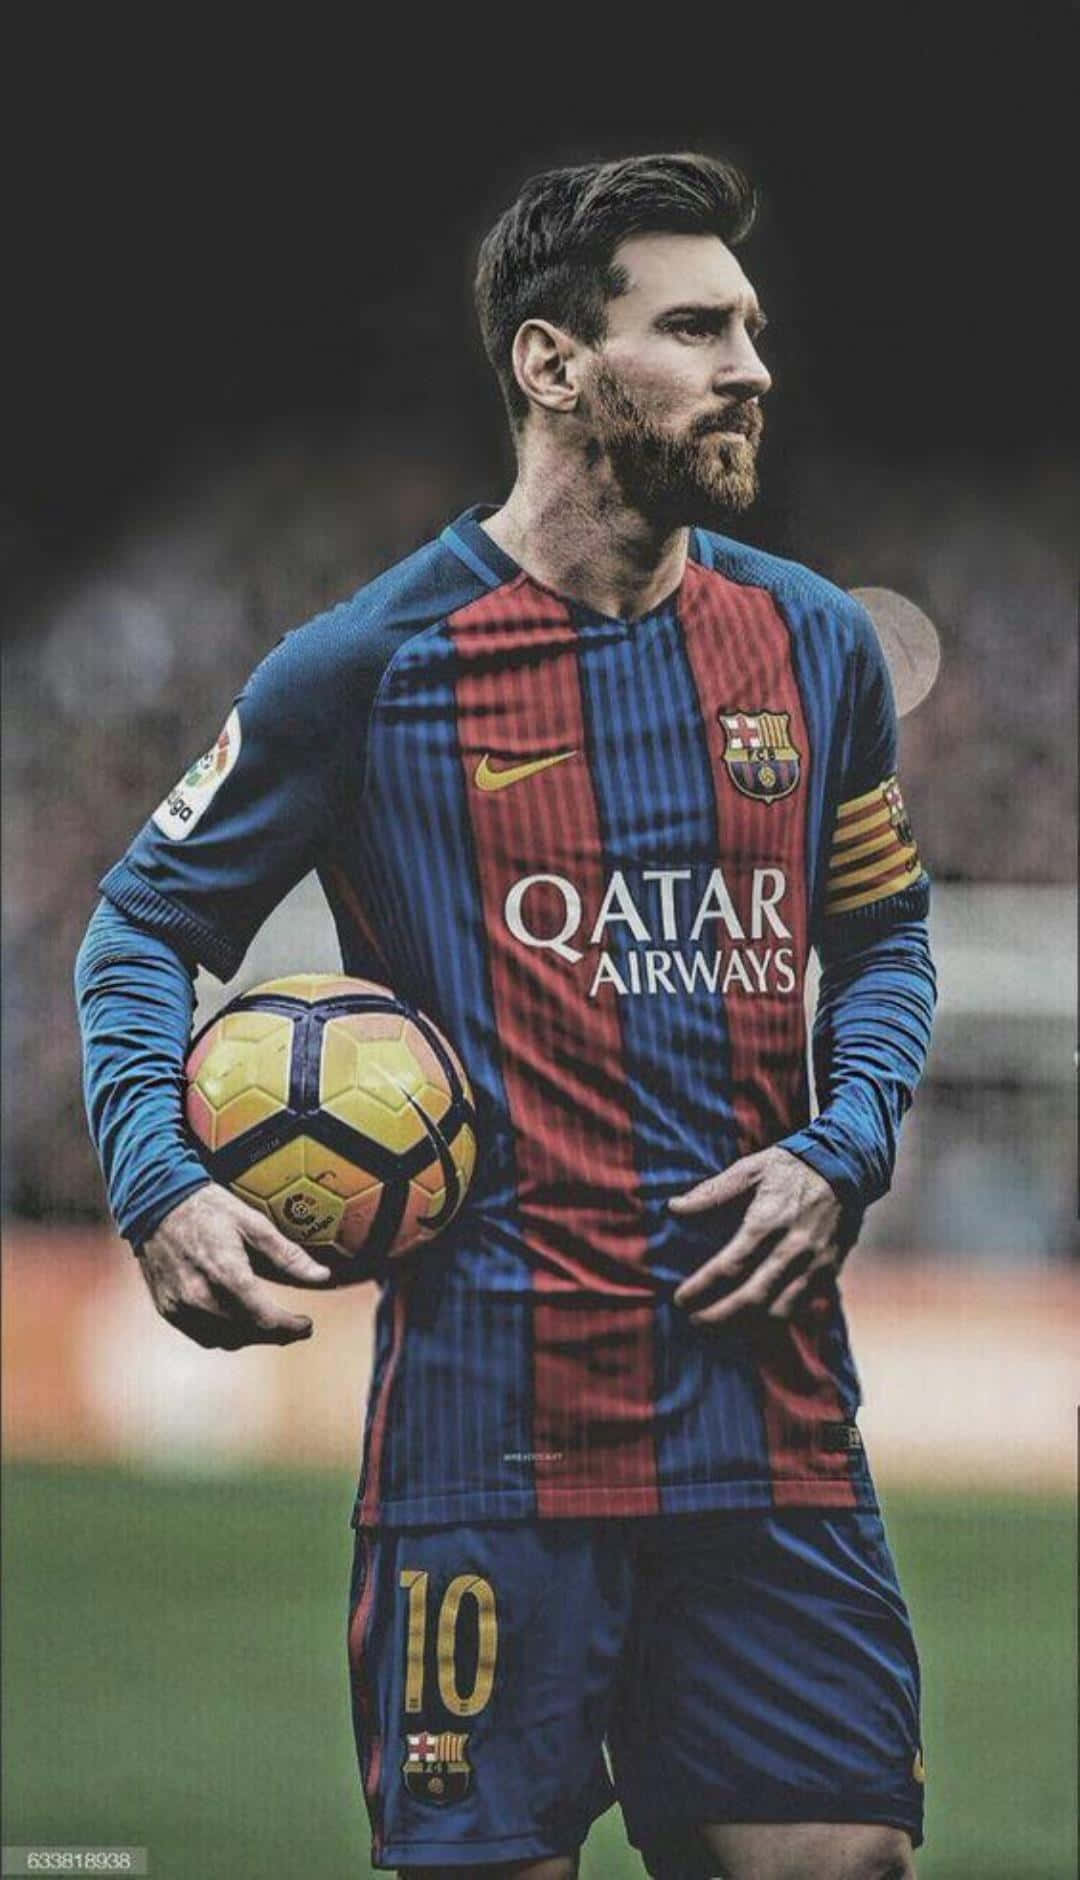 Wallpaper Messi 4K đẹp nhất dành cho điện thoại iPhone! Đây là hình nền hoàn hảo để trang trí màn hình của bạn. Cùng chiêm ngưỡng hình ảnh đầy sức mạnh và uyển chuyển của siêu sao bóng đá Lionel Messi.